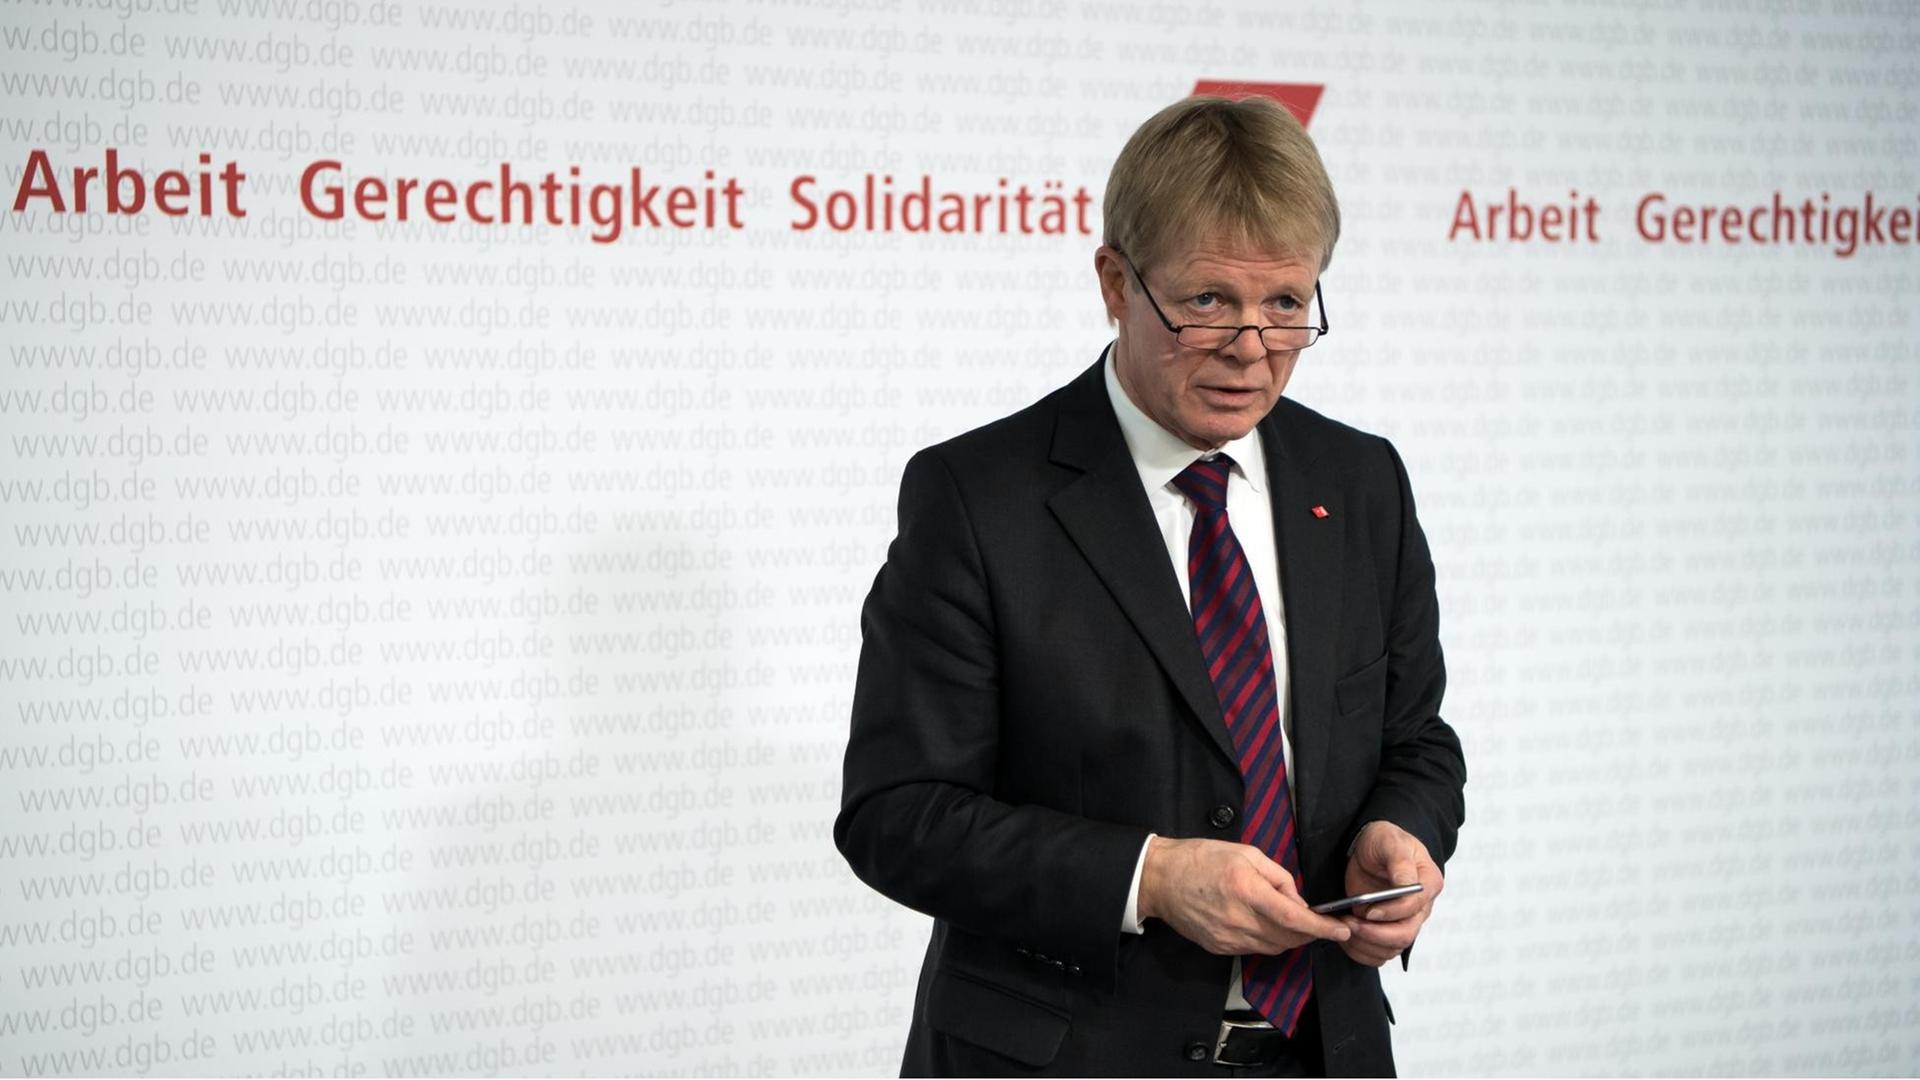 Das Bild zeigt Reiner Hoffmann, Vorsitzender des Deutschen Gewerkschaftsbundes am 16.01.2017 bei der Jahres-Pressekonferenz des DGB in Berlin.